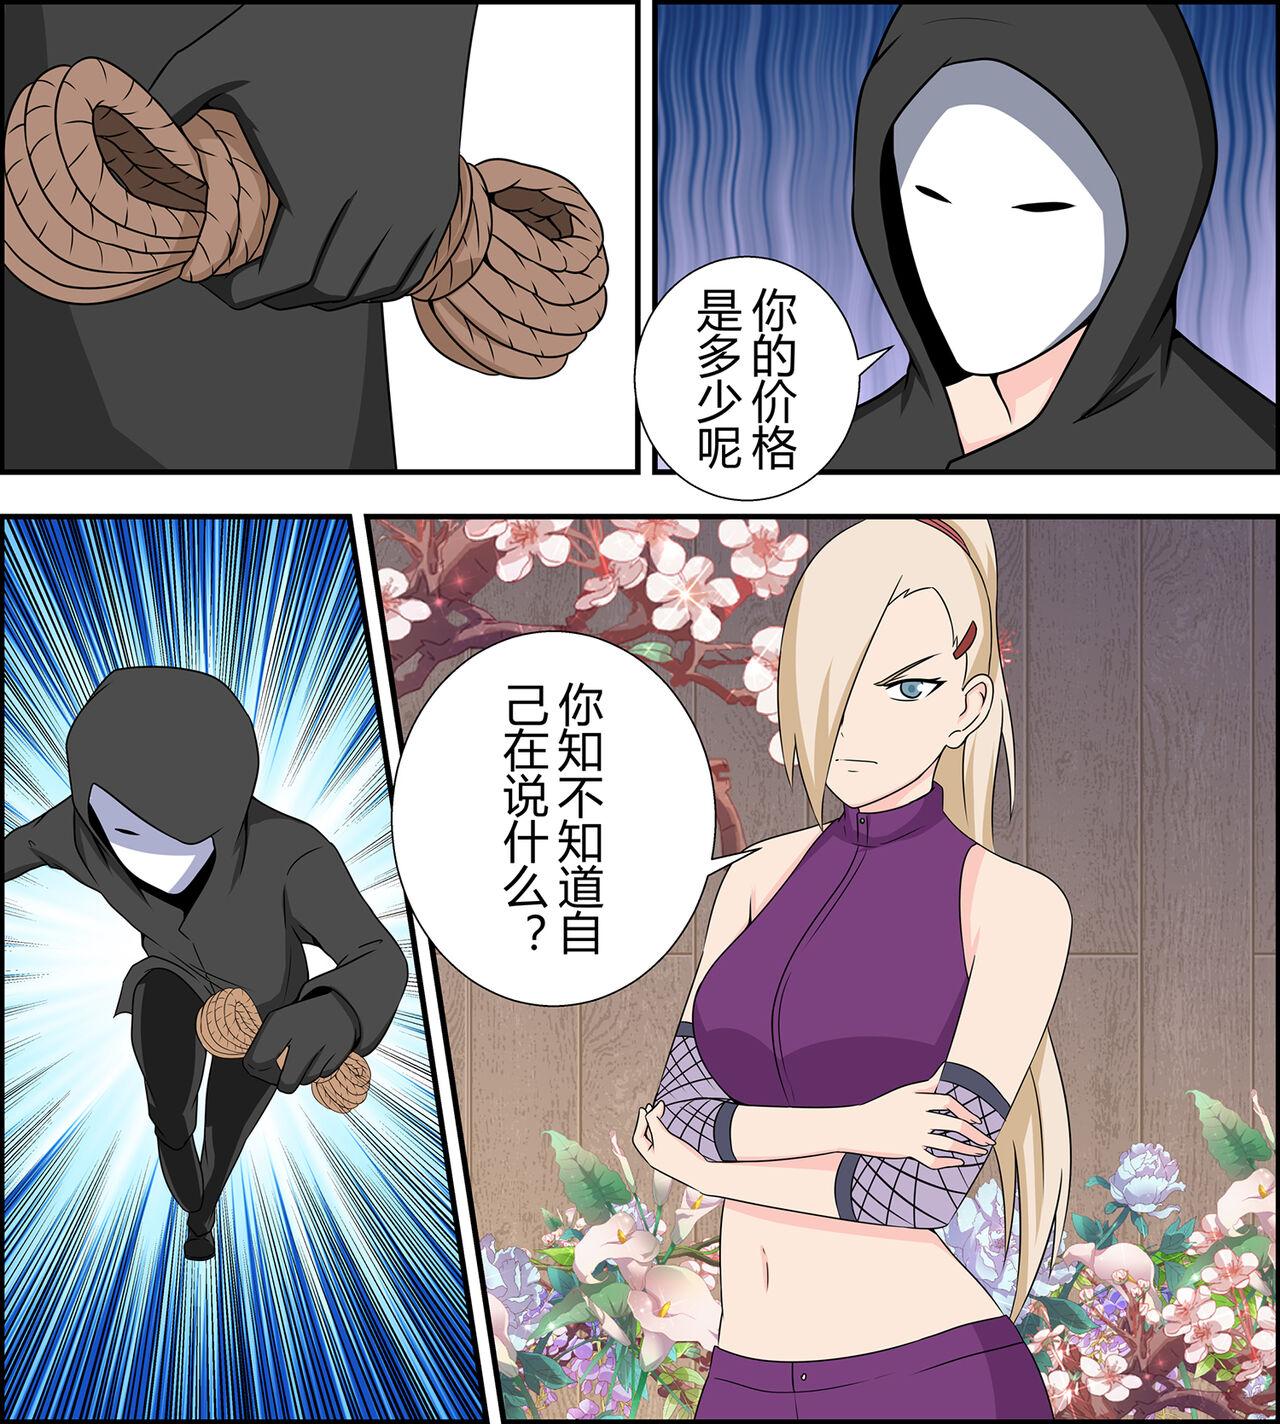 Free Blowjob Porn Yamanaka ino kidnapping case - Naruto Rubdown - Page 3